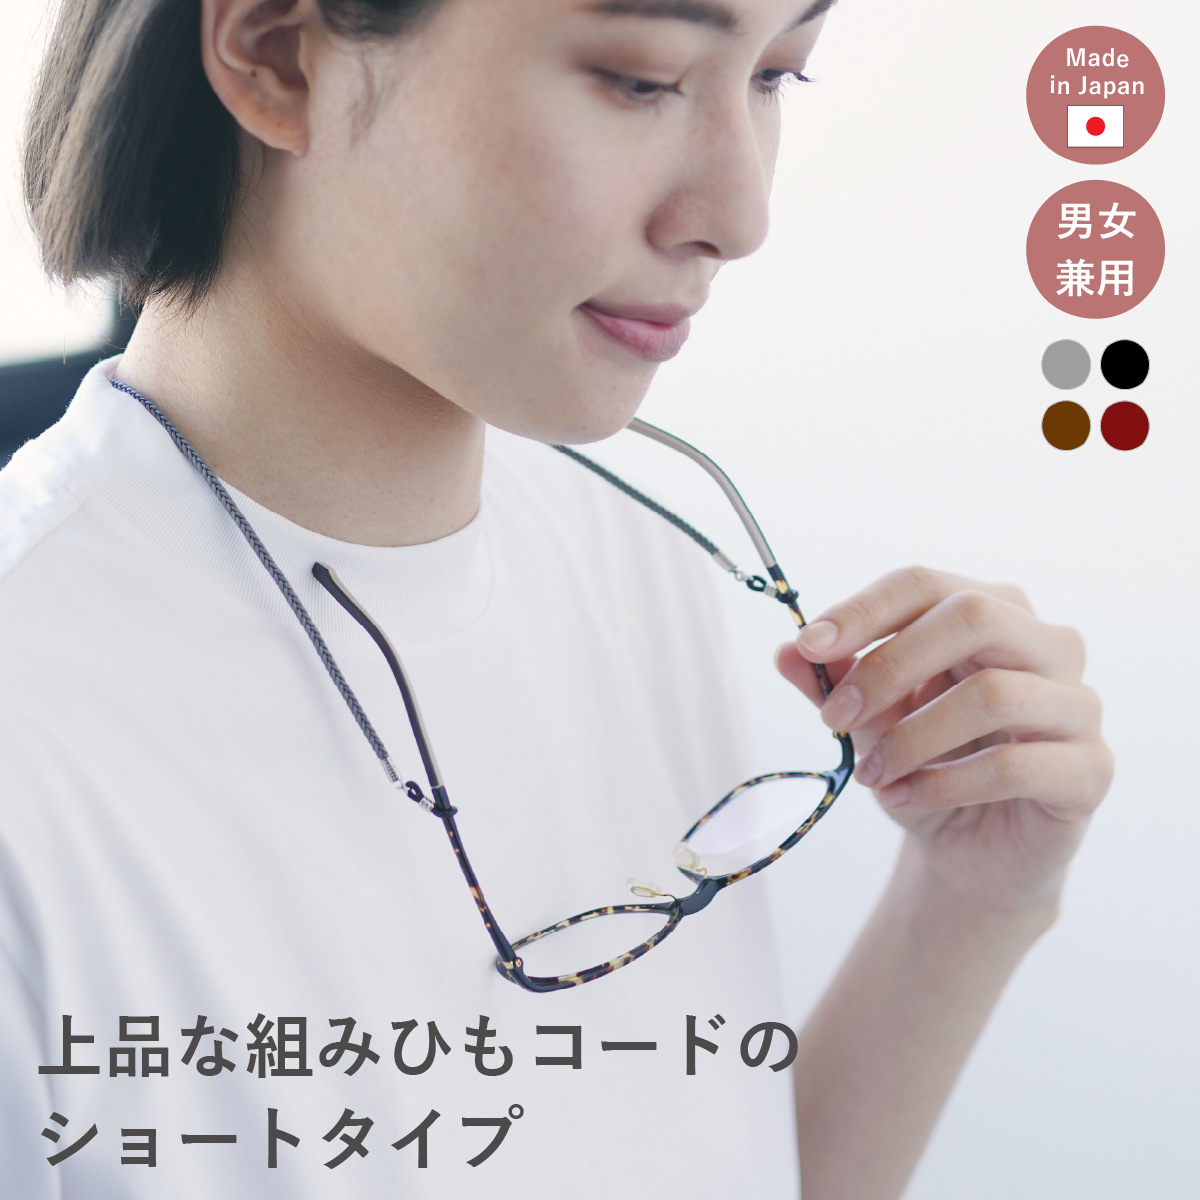 メガネチェーン メガネストラップ 眼鏡チェーン ショート めがねストラップ グラスコード 日本製 サングラス ドライブ マグネット 磁石 机に当たらない シンプル 組みひも 軽い 実用的 レディース メンズ ユニセックス ギフト プレゼント